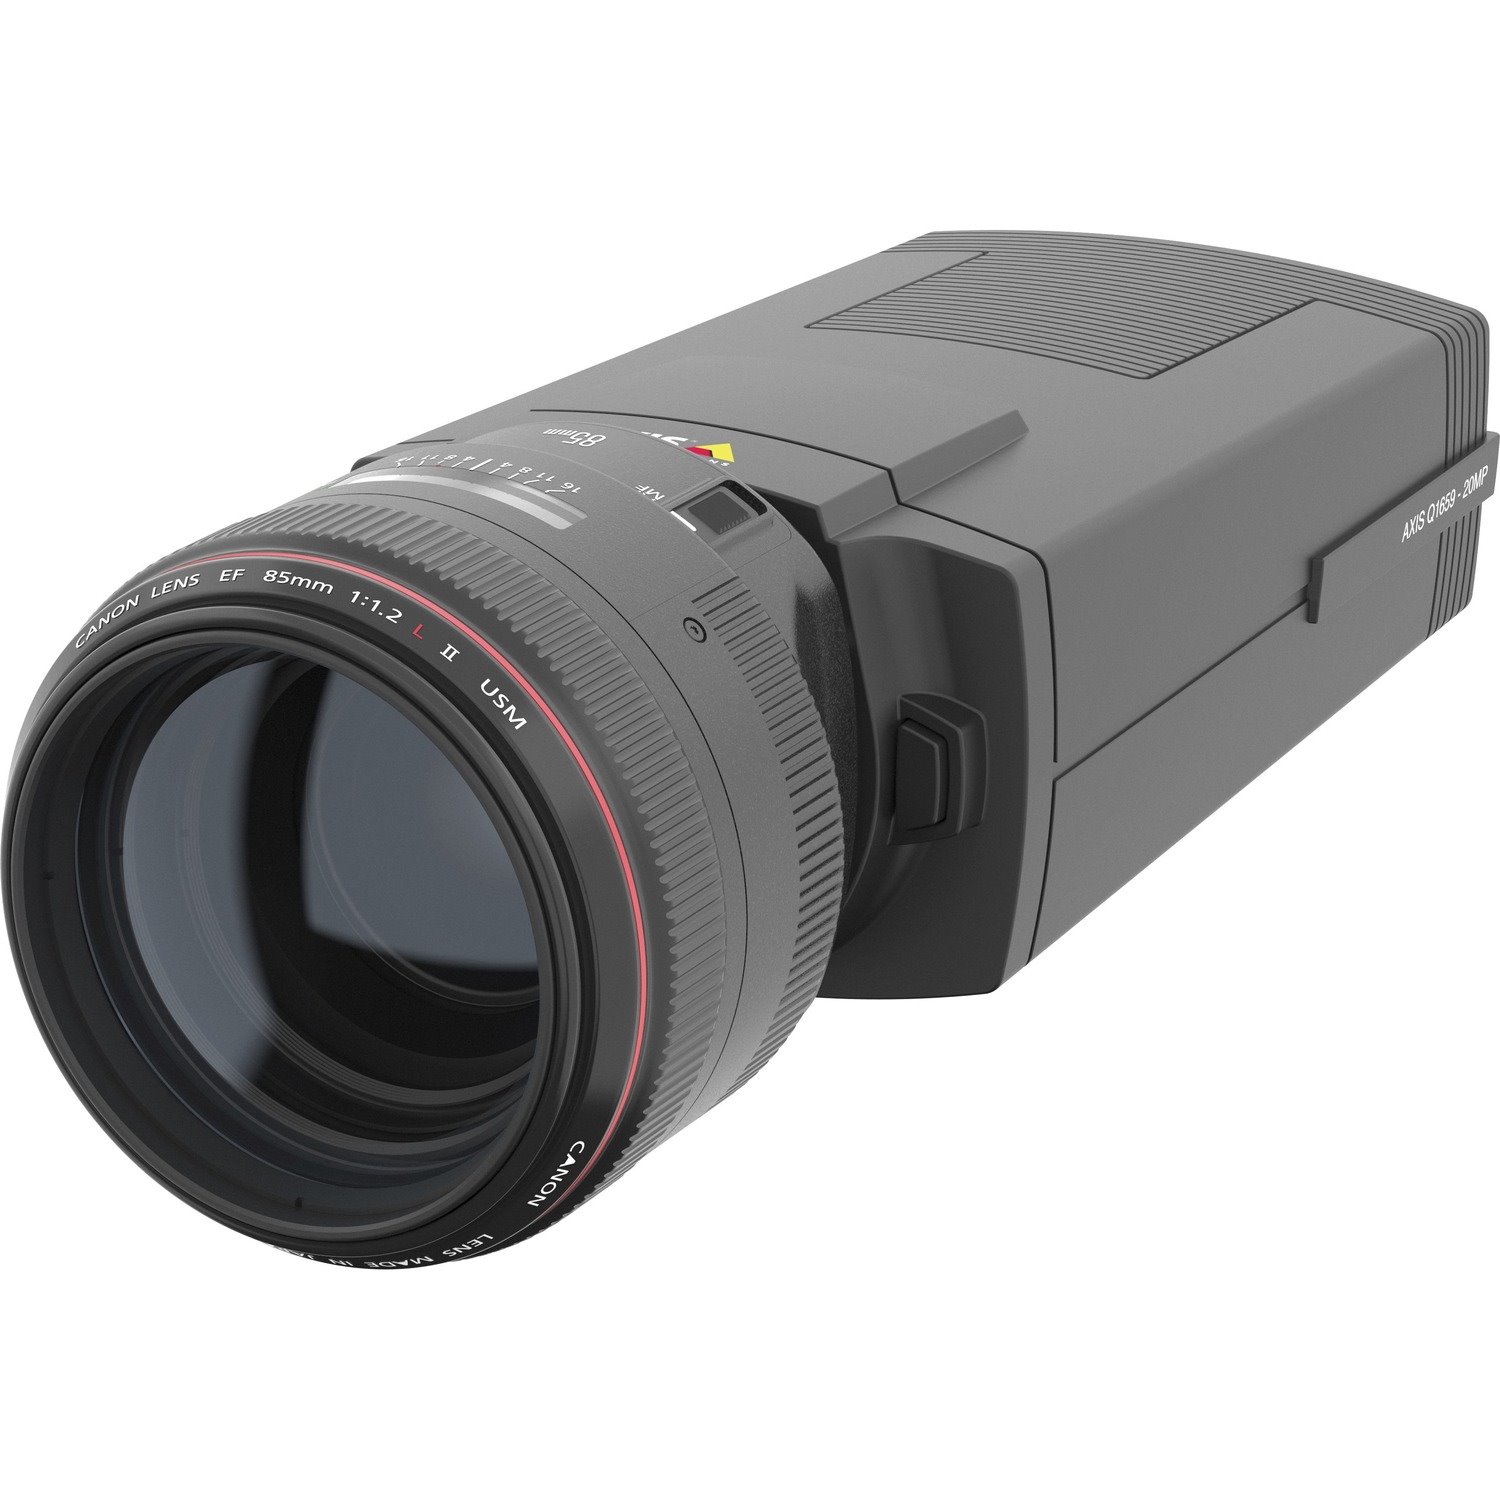 AXIS Q1659 20 Megapixel Network Camera - Color - Box - Black - TAA Compliant